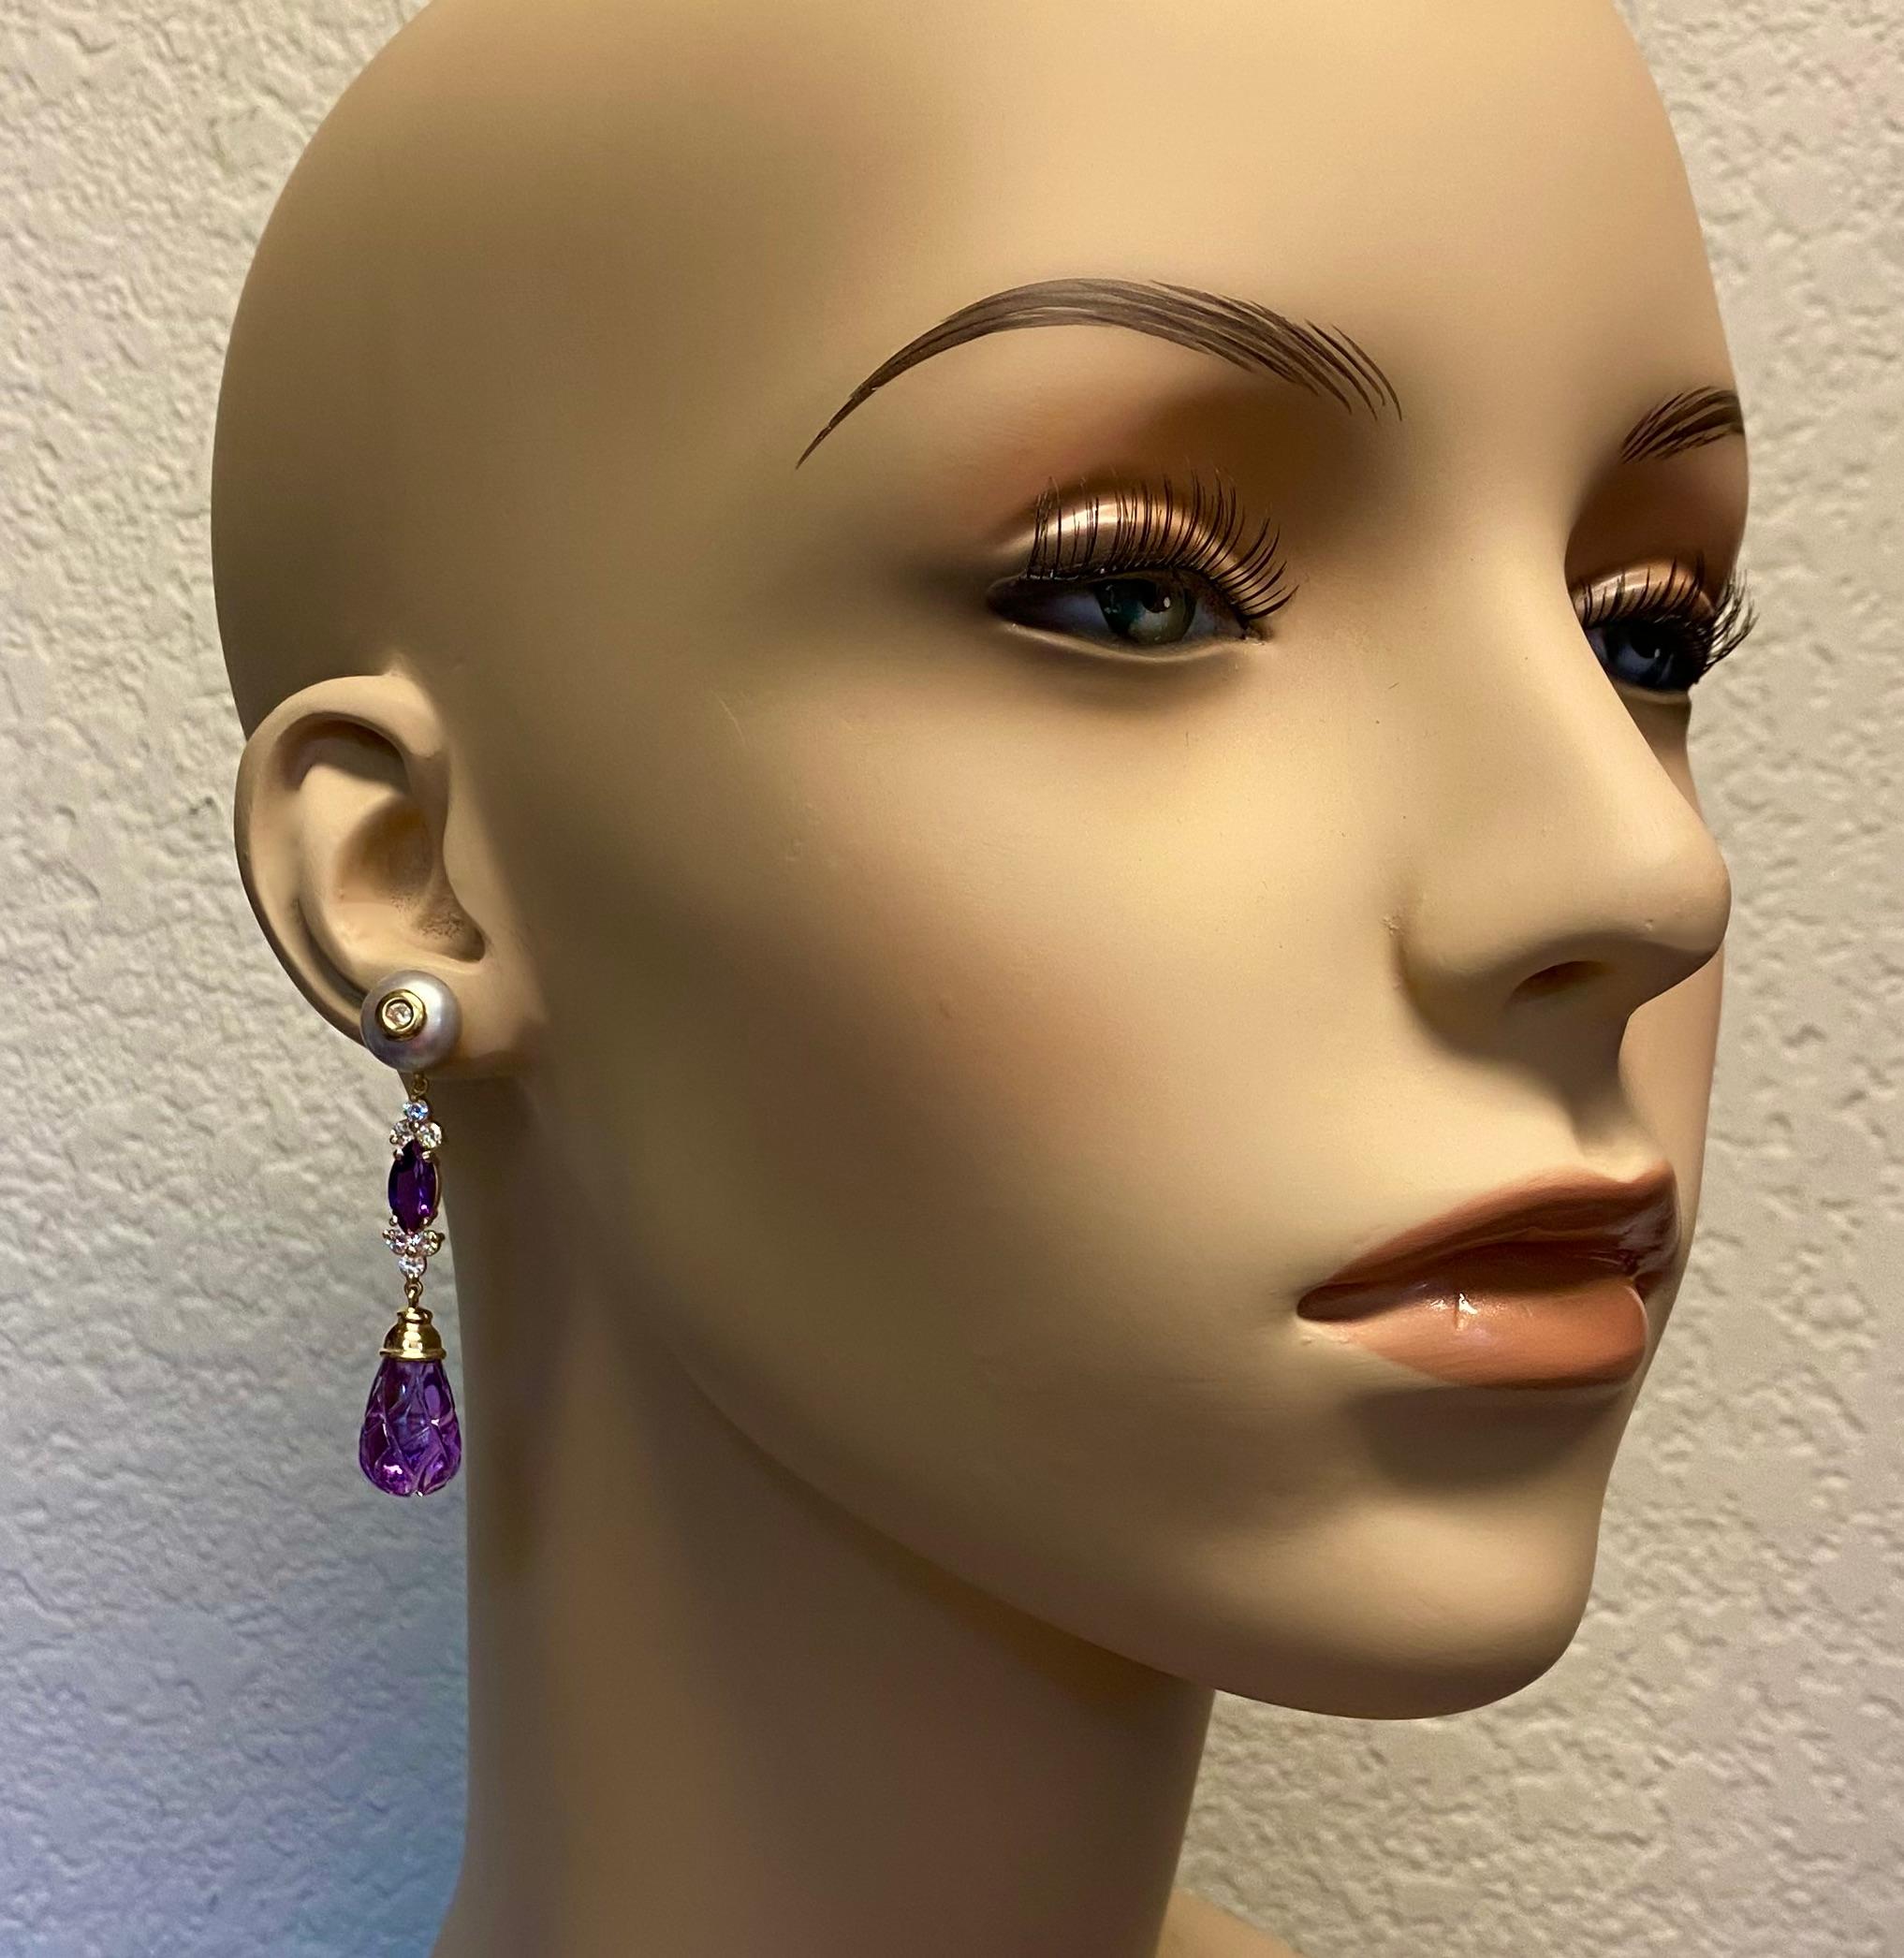 Der Amethyst wird durch graue Perlen in diesen eleganten Ohrhängern vervollständigt.  Die geschnitzten Amethysttropfen wurden fachmännisch in ein Kreuzschraffurmuster geschnitzt.  Sie haben eine lebendige mittelviolette Farbe und sind sehr gut